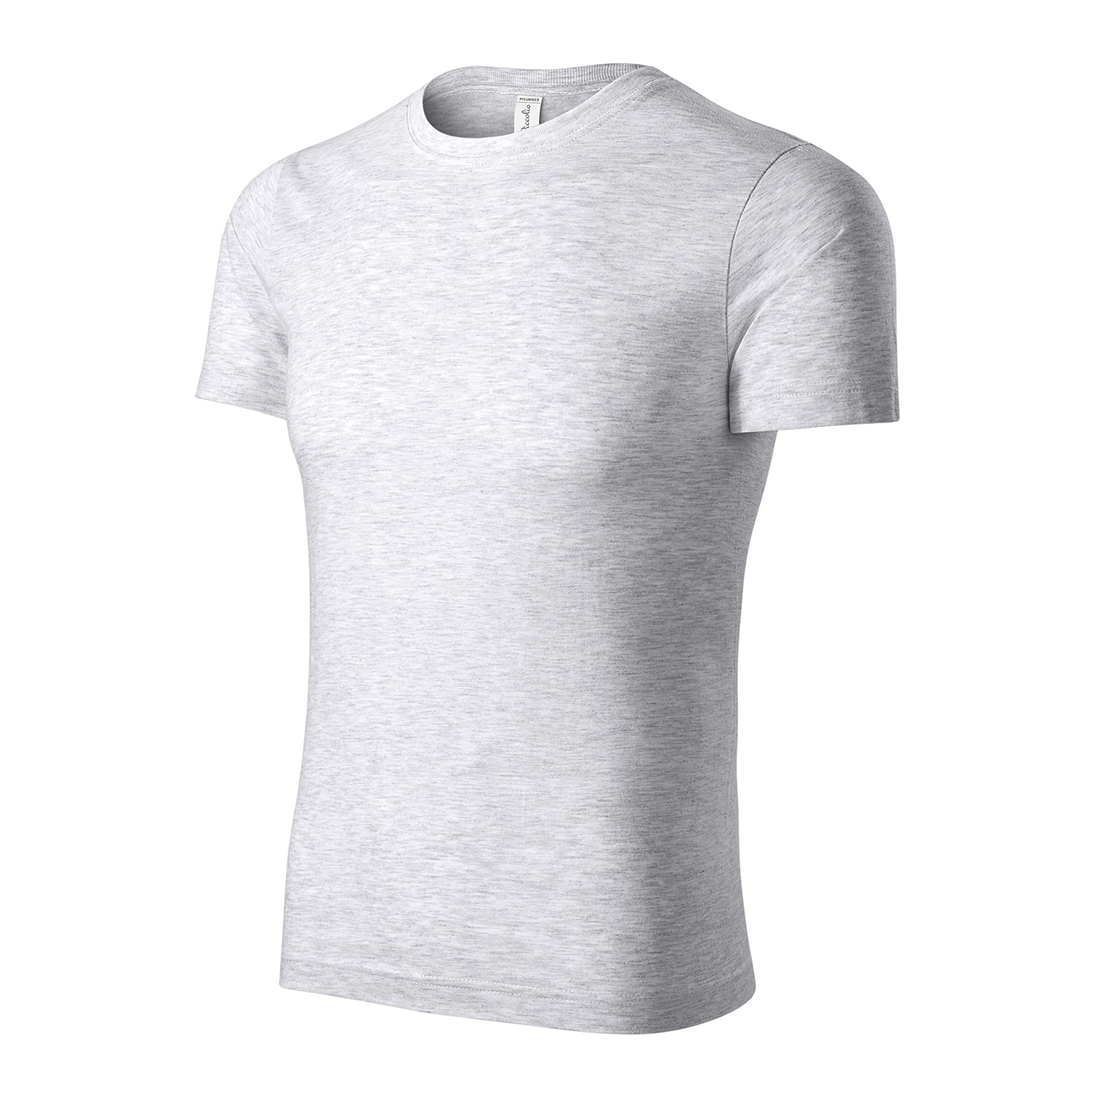 Maglietta unisex 100% cotone - Abbigliamento di protezione